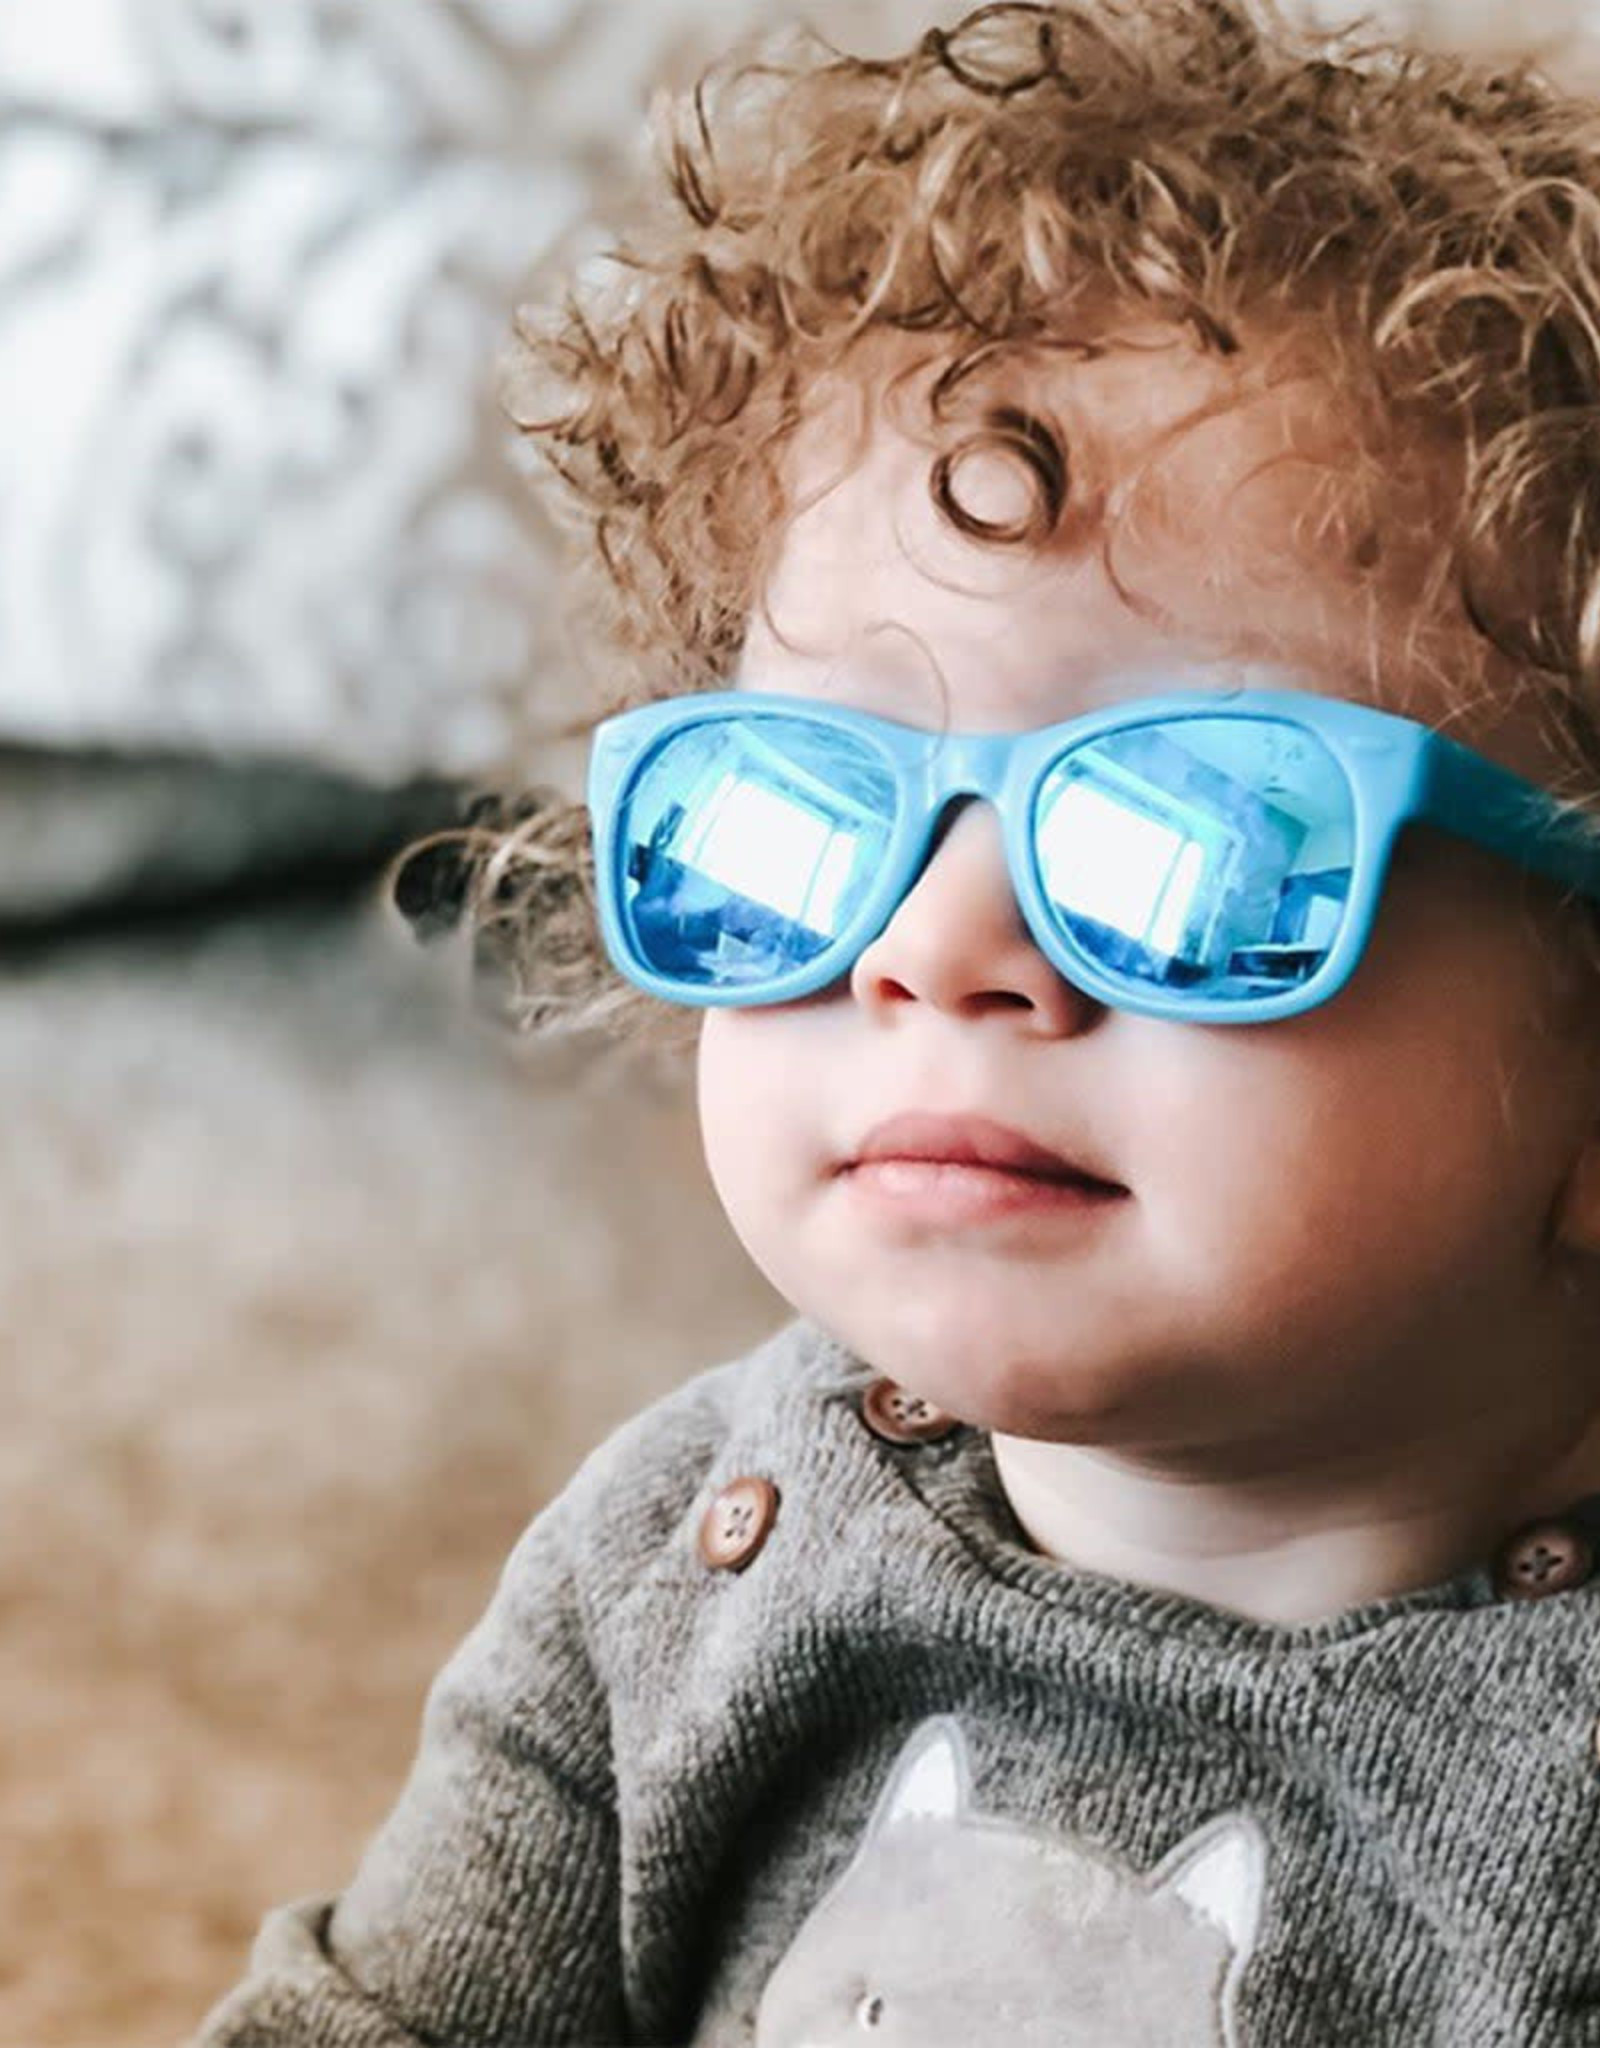 Ro Sham Bo Sunglasses - Zack Morris Blue - Mirrored Blue, Toddler (2-4)